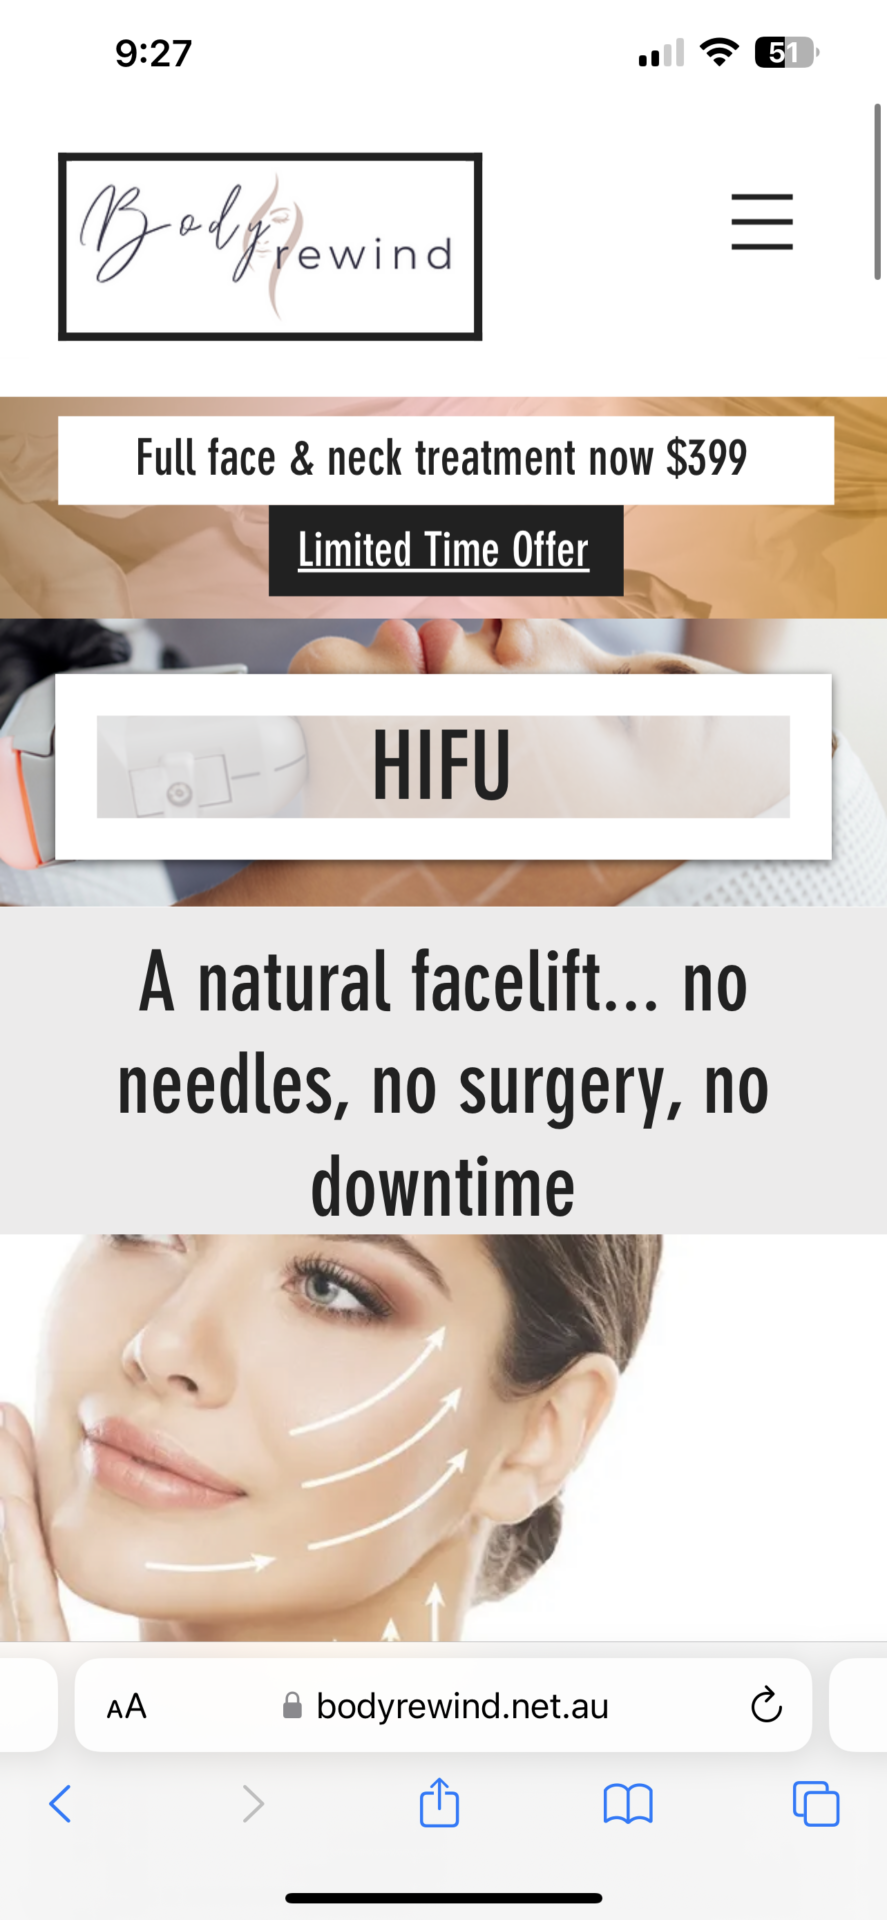 HIFU - Face/Neck treatment